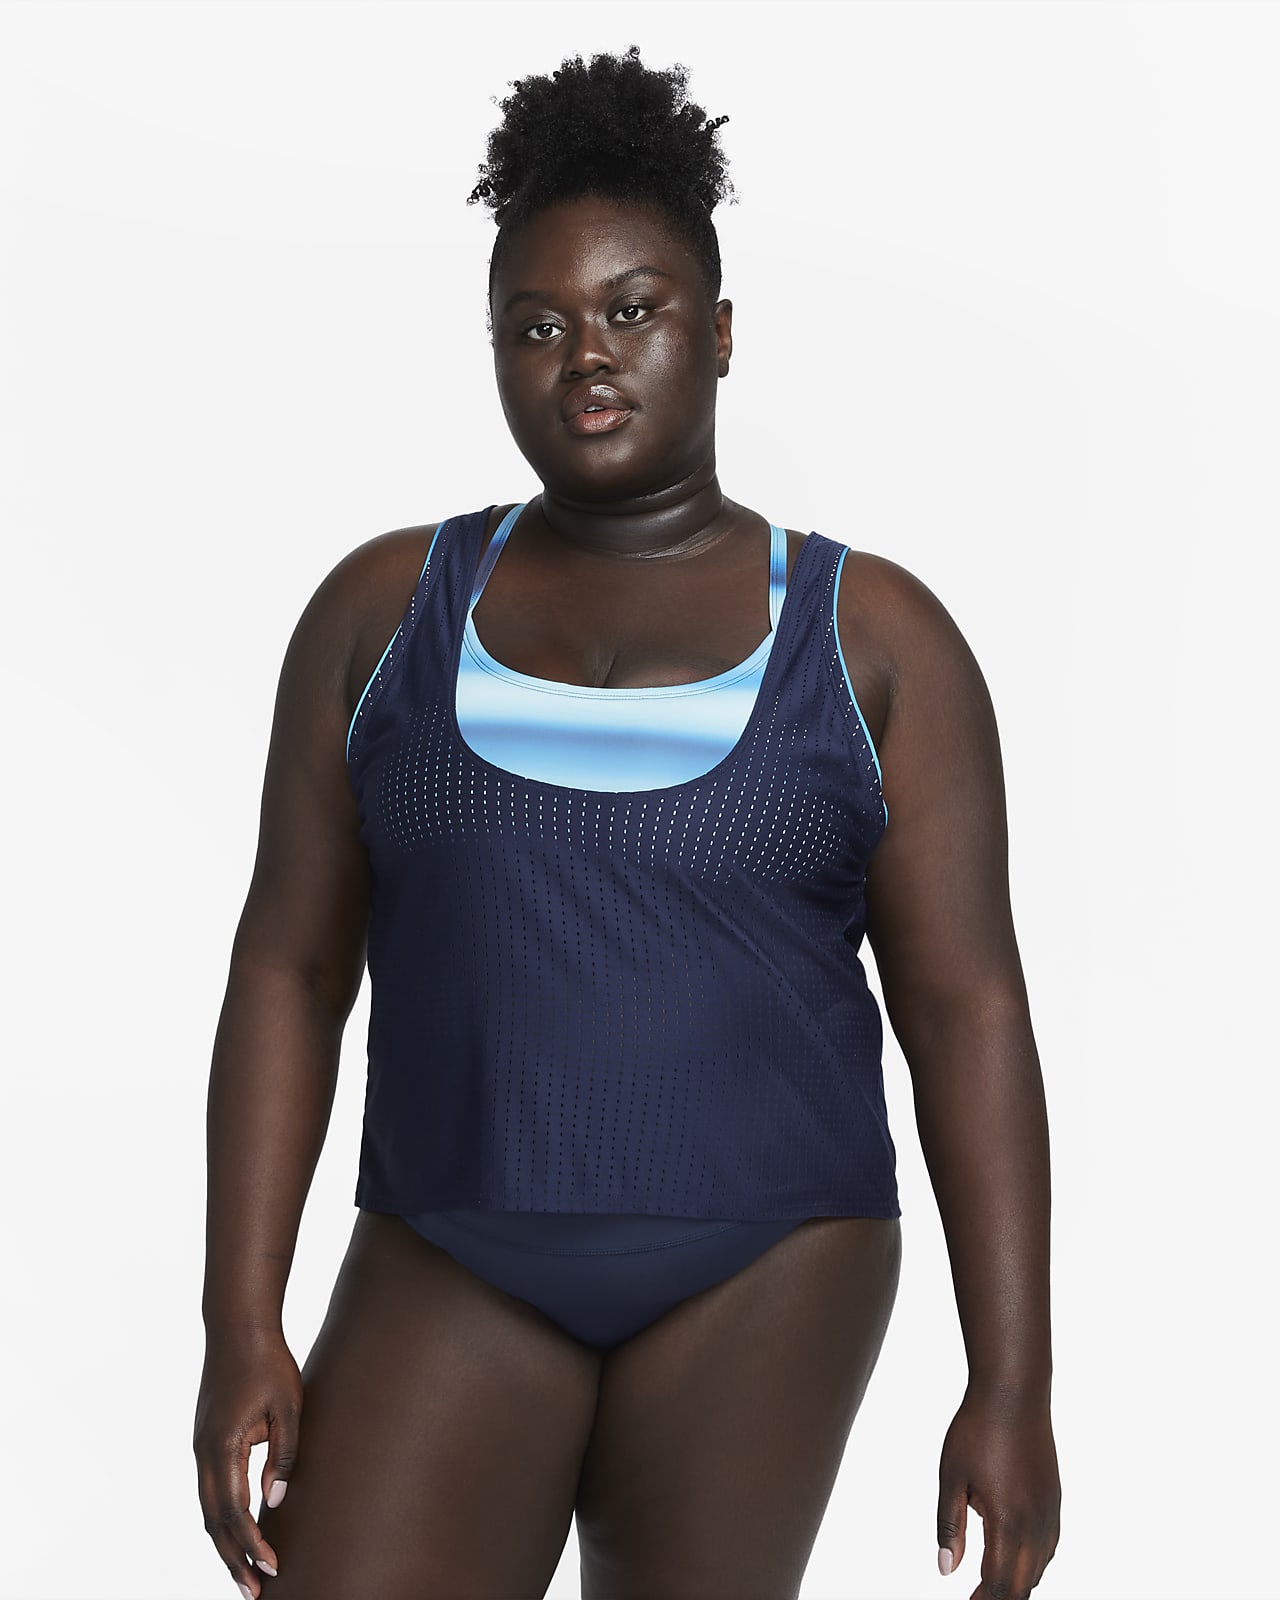 mus Lagring overførsel Nike Swim Women's Convertible Layered Tankini Top (Plus Size). Nike.com